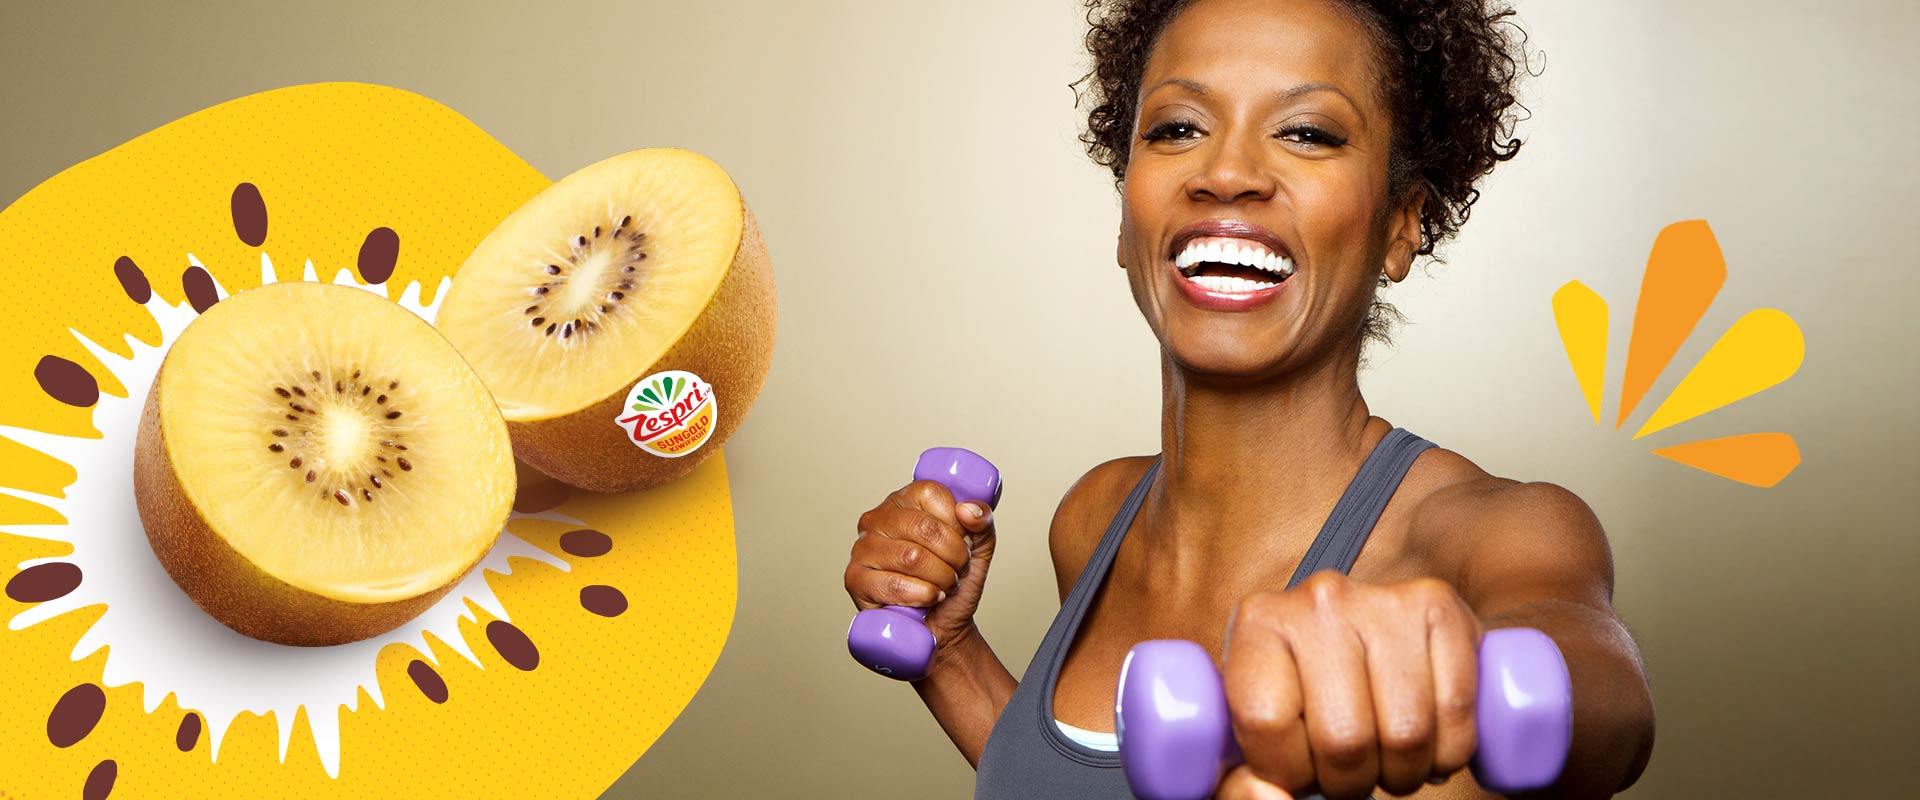 5 idées inspirantes pour alimenter votre corps après l'entraînement